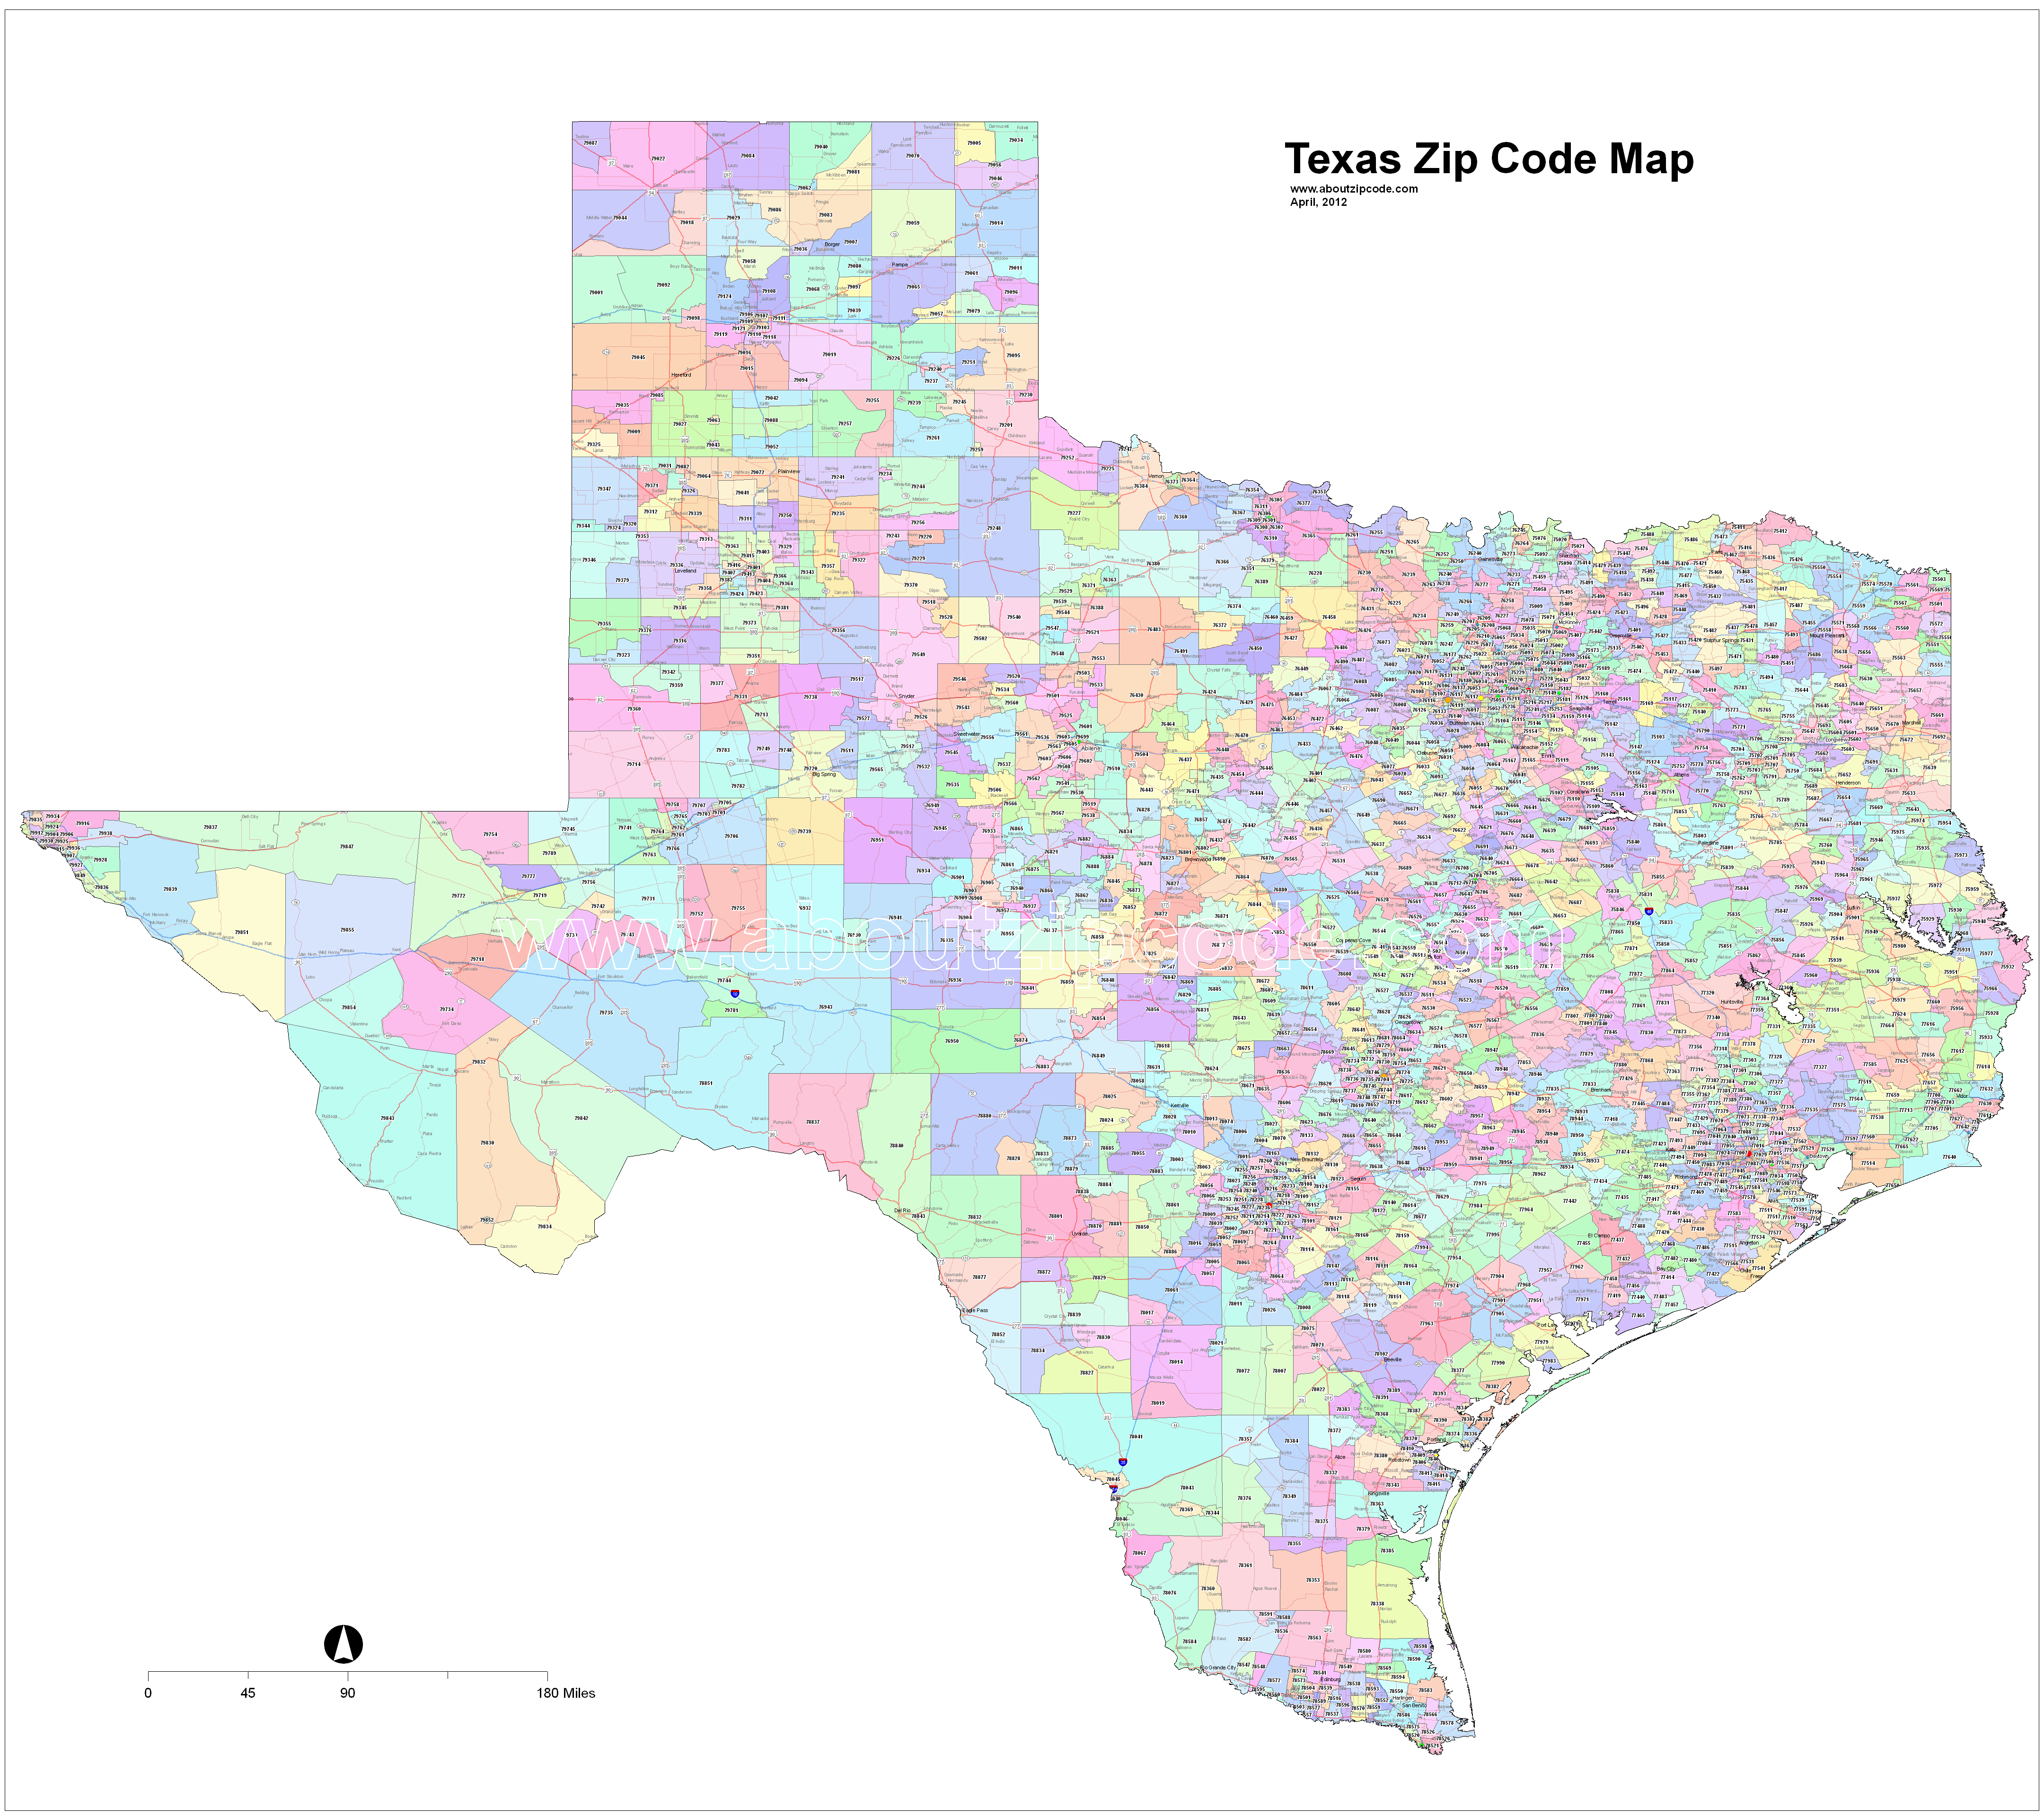 Texas Zip Code Maps - Free Texas Zip Code Maps - Texas Zip Code Map